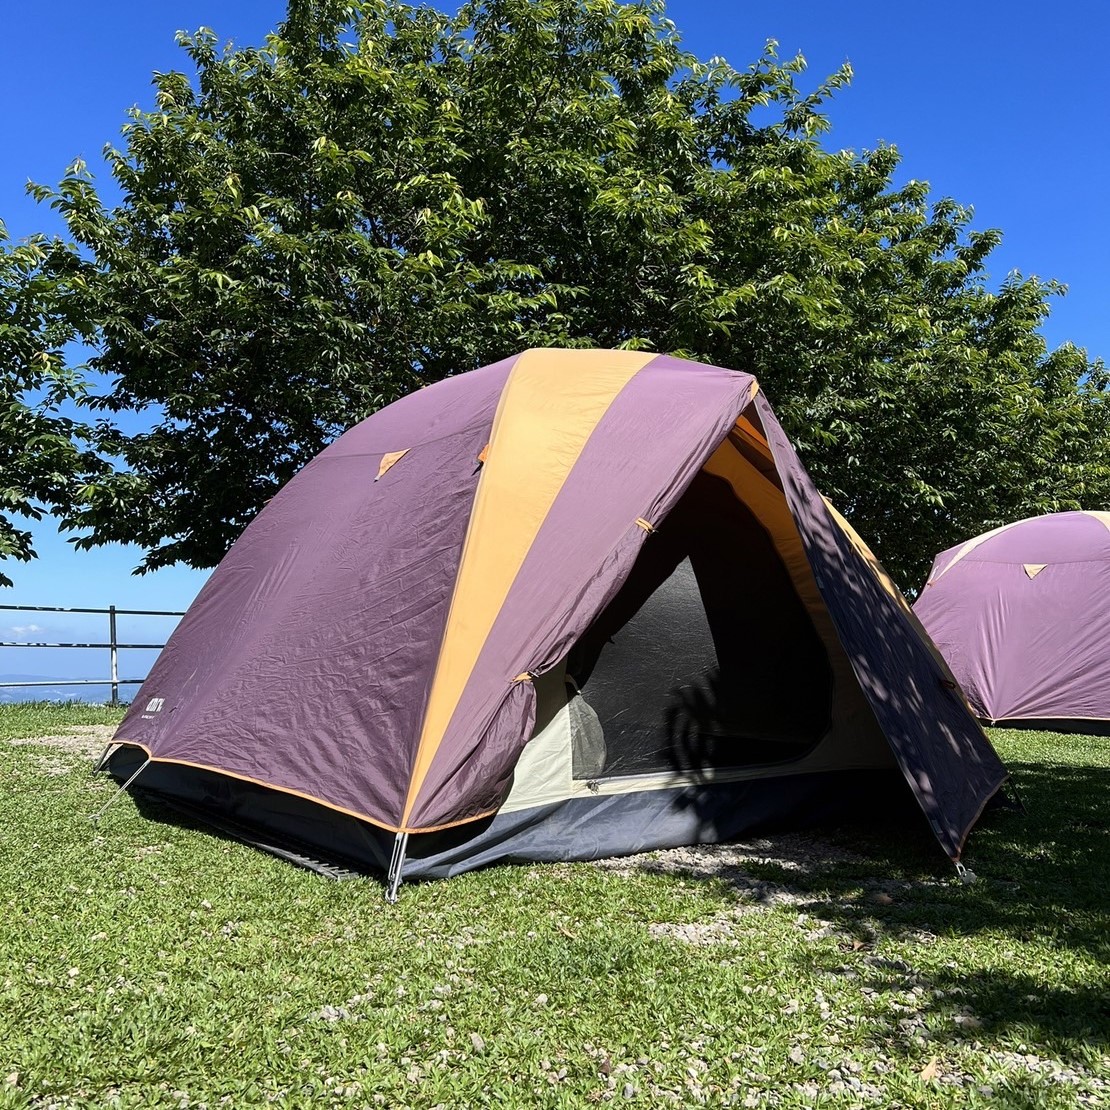 營區內帳篷